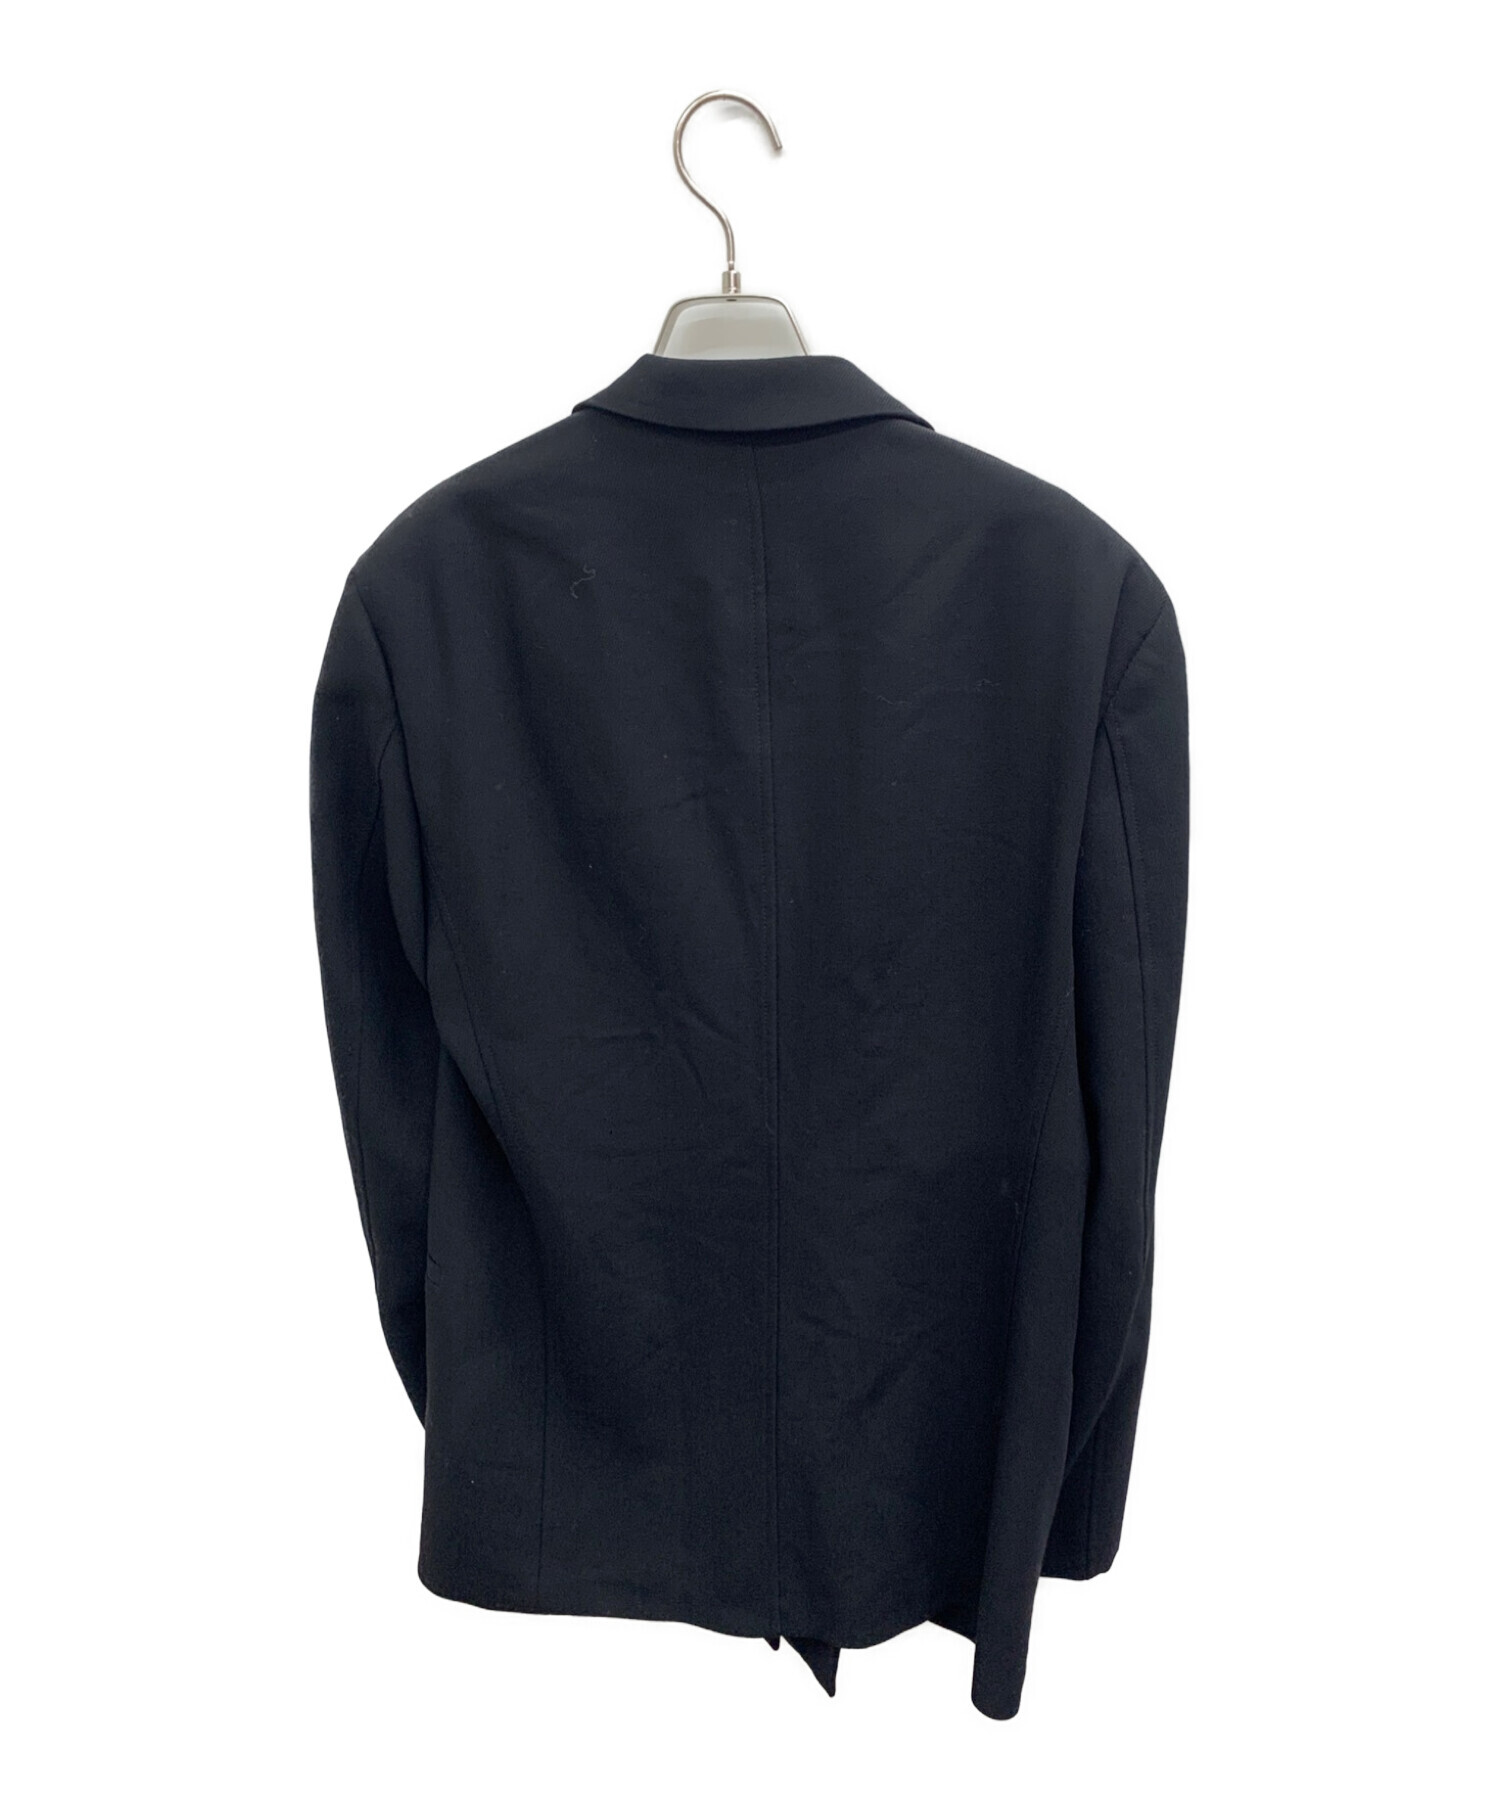 ARMANI COLLEZIONI (アルマーニ コレツィオーニ) フライフロントジャケット ブラック サイズ:46